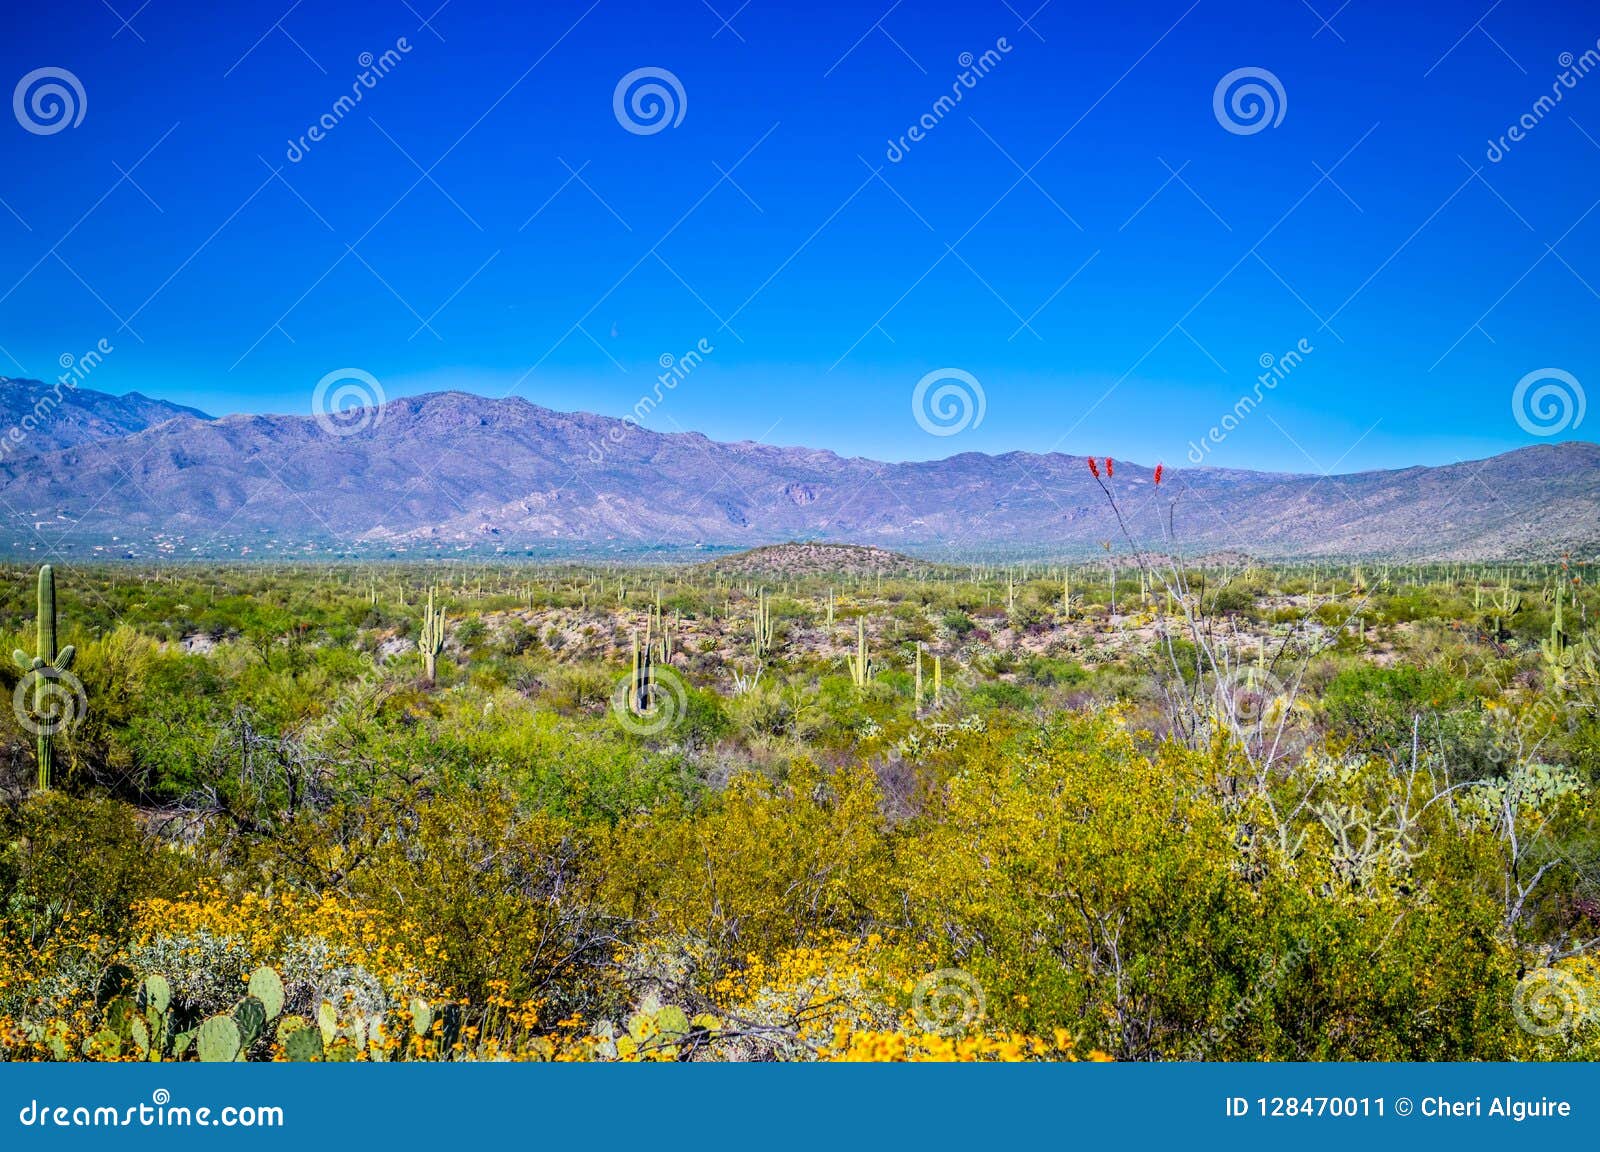 Una vista della siluetta delle montagne di Rincon nel parco nazionale del saguaro, Arizona. Una vista delle montagne di Rincon circondate dal cactus del saguaro nell'ambiente del verde al parco nazionale del saguaro